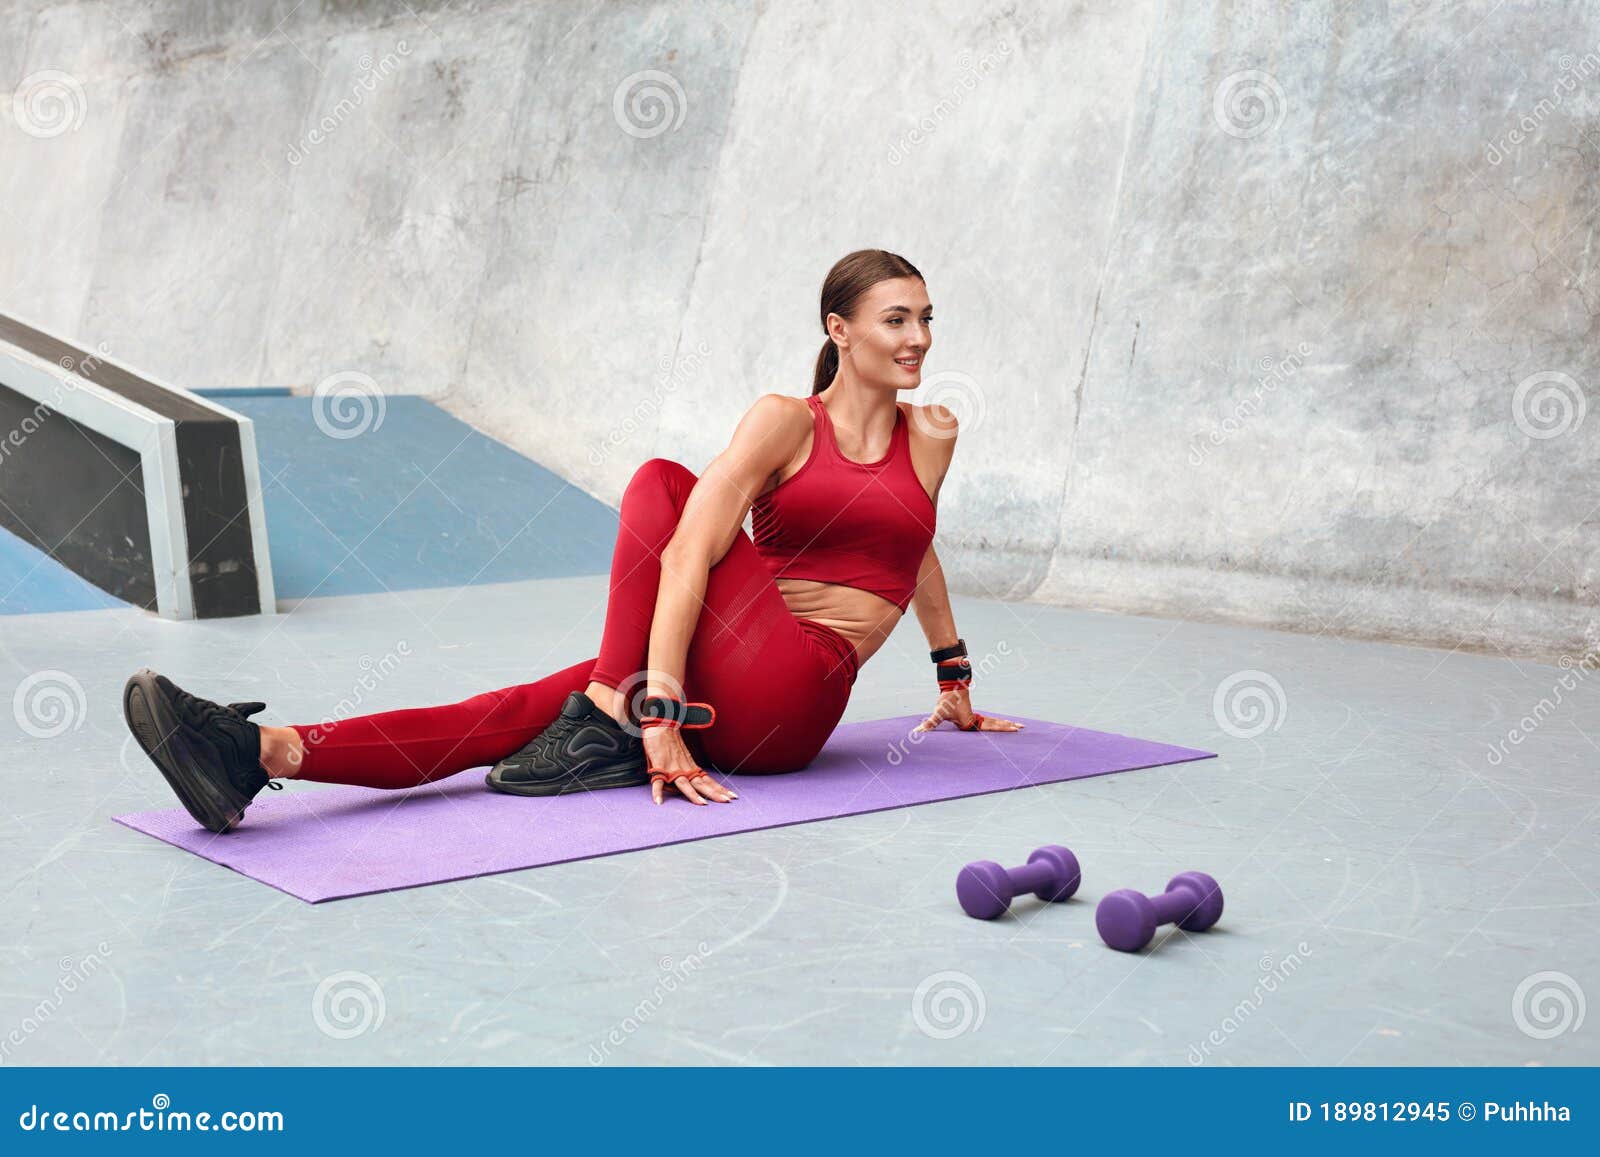 https://thumbs.dreamstime.com/z/deporte-mujer-estirando-sobre-alfombra-de-yoga-antes-hacer-ejercicio-gimnasia-femenina-con-fuerte-cuerpo-muscular-en-ropa-189812945.jpg